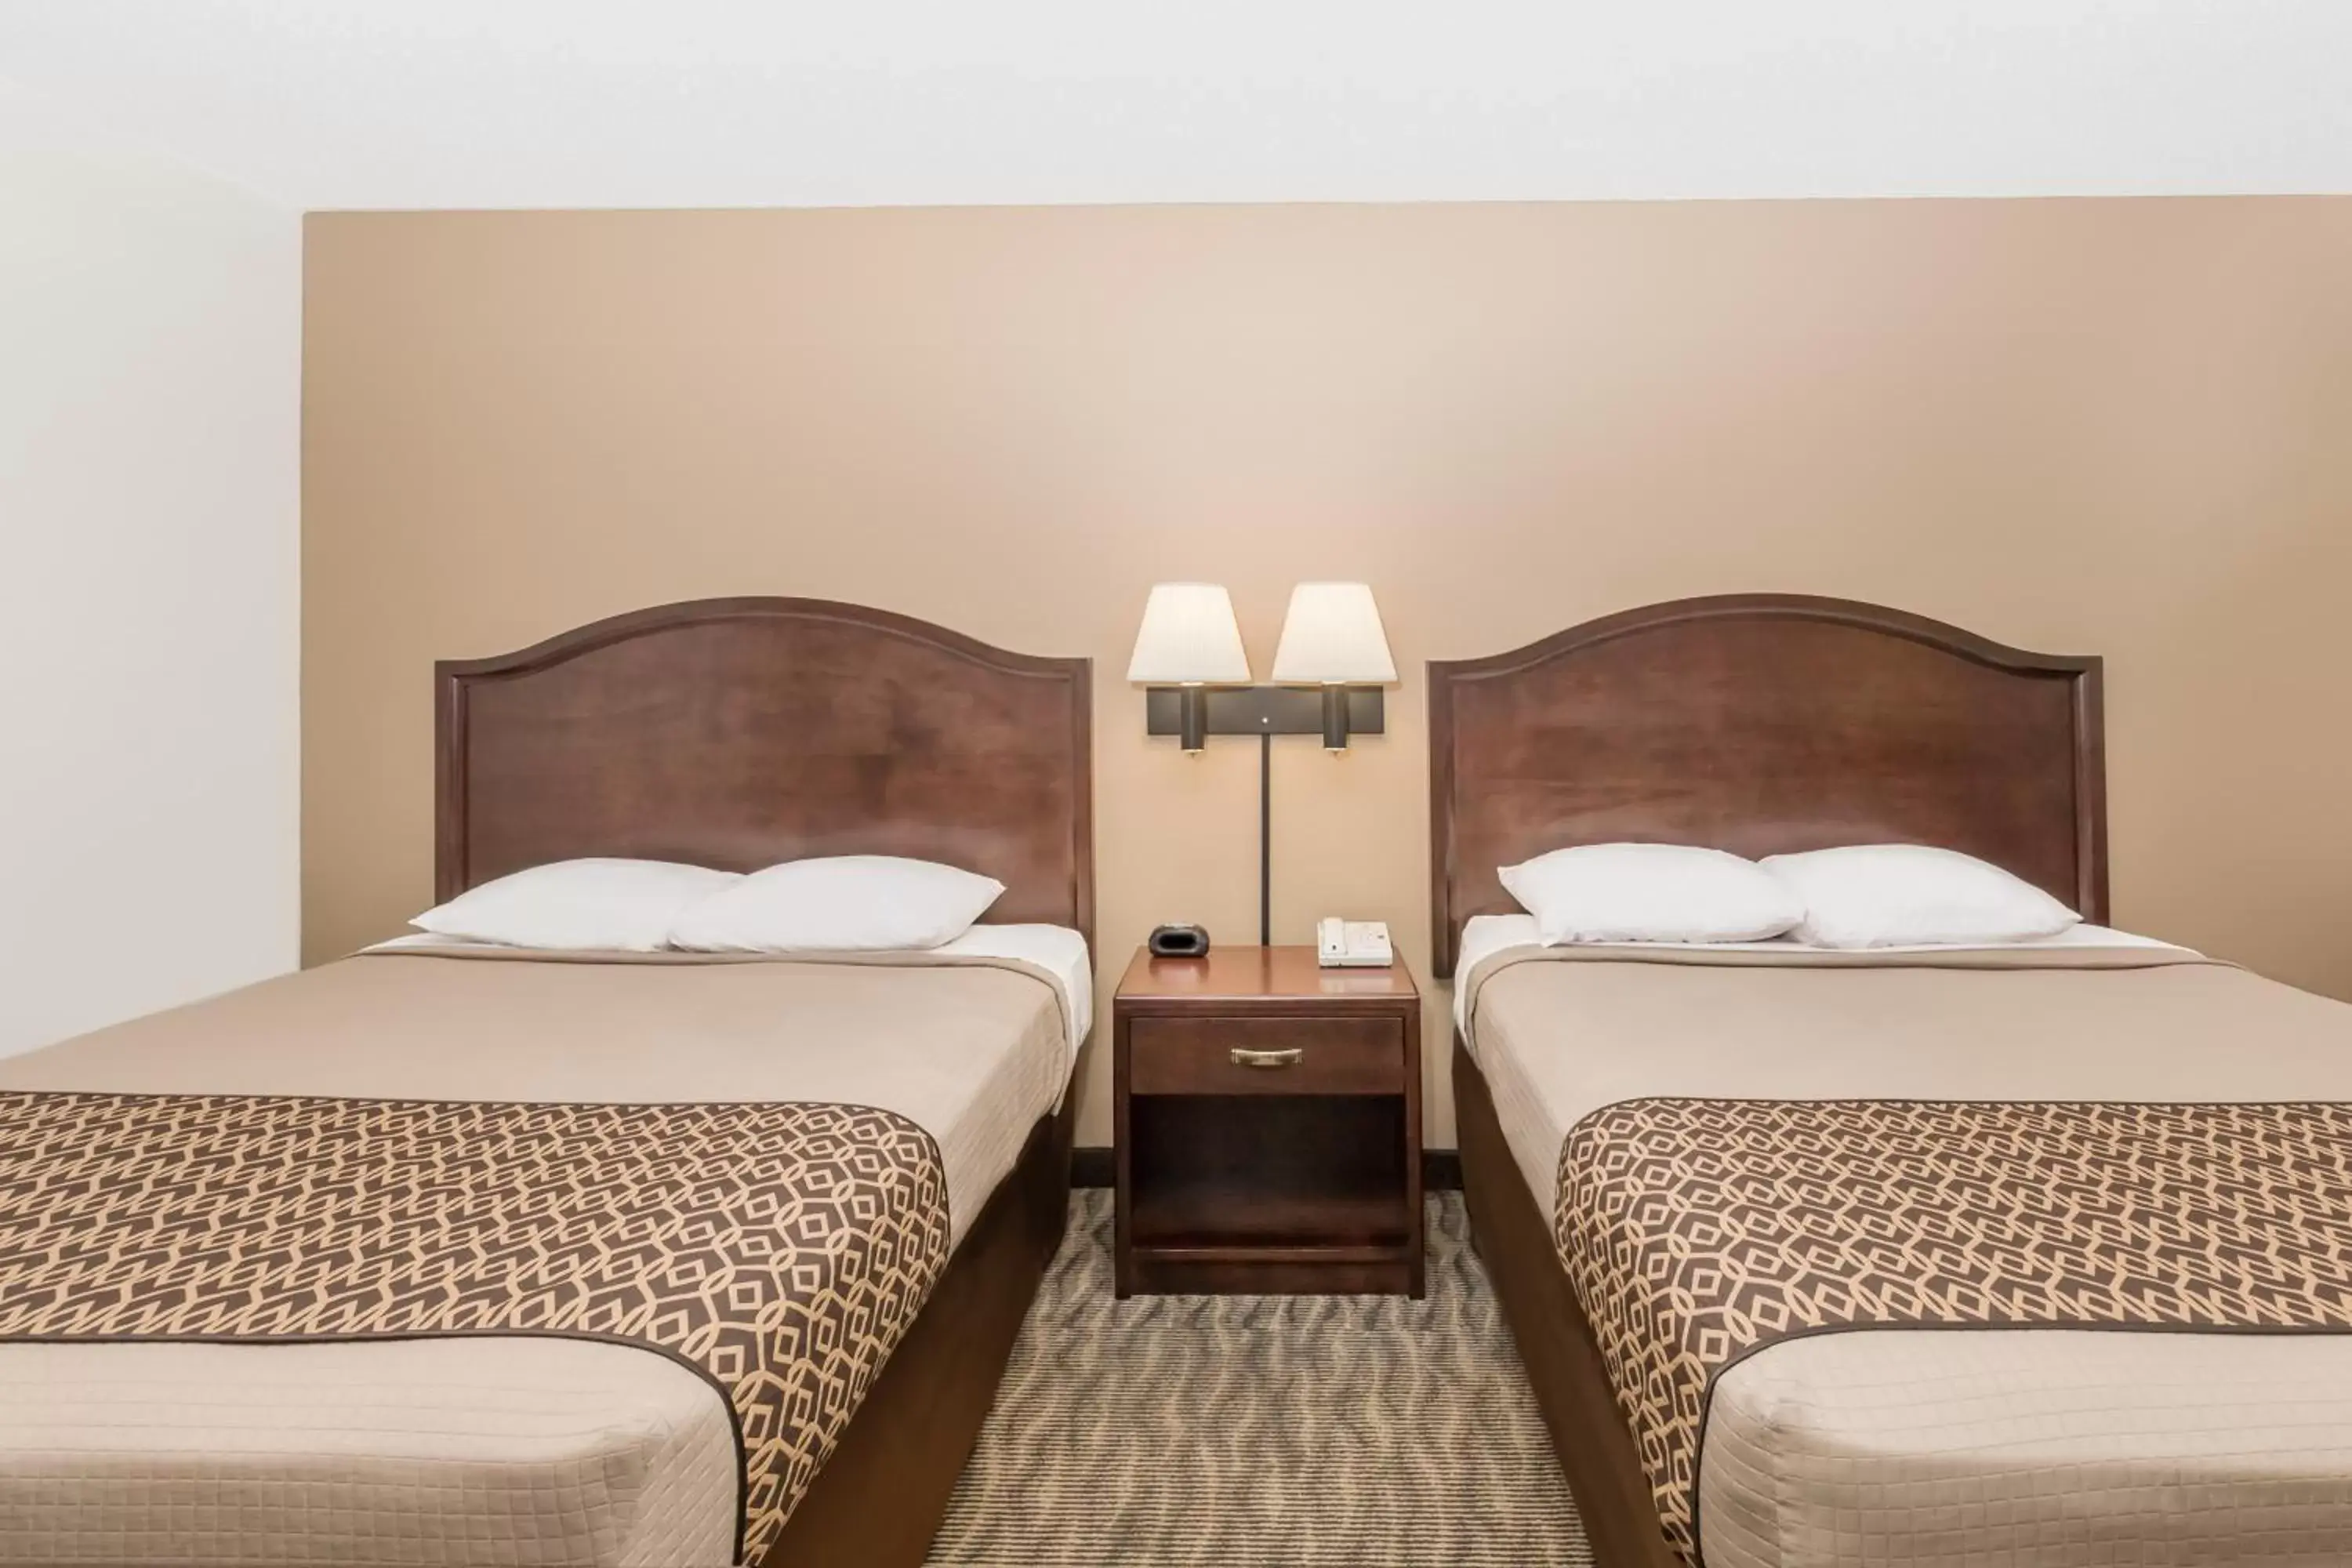 Bed, Room Photo in Americas Best Value Inn & Suites Atlantic